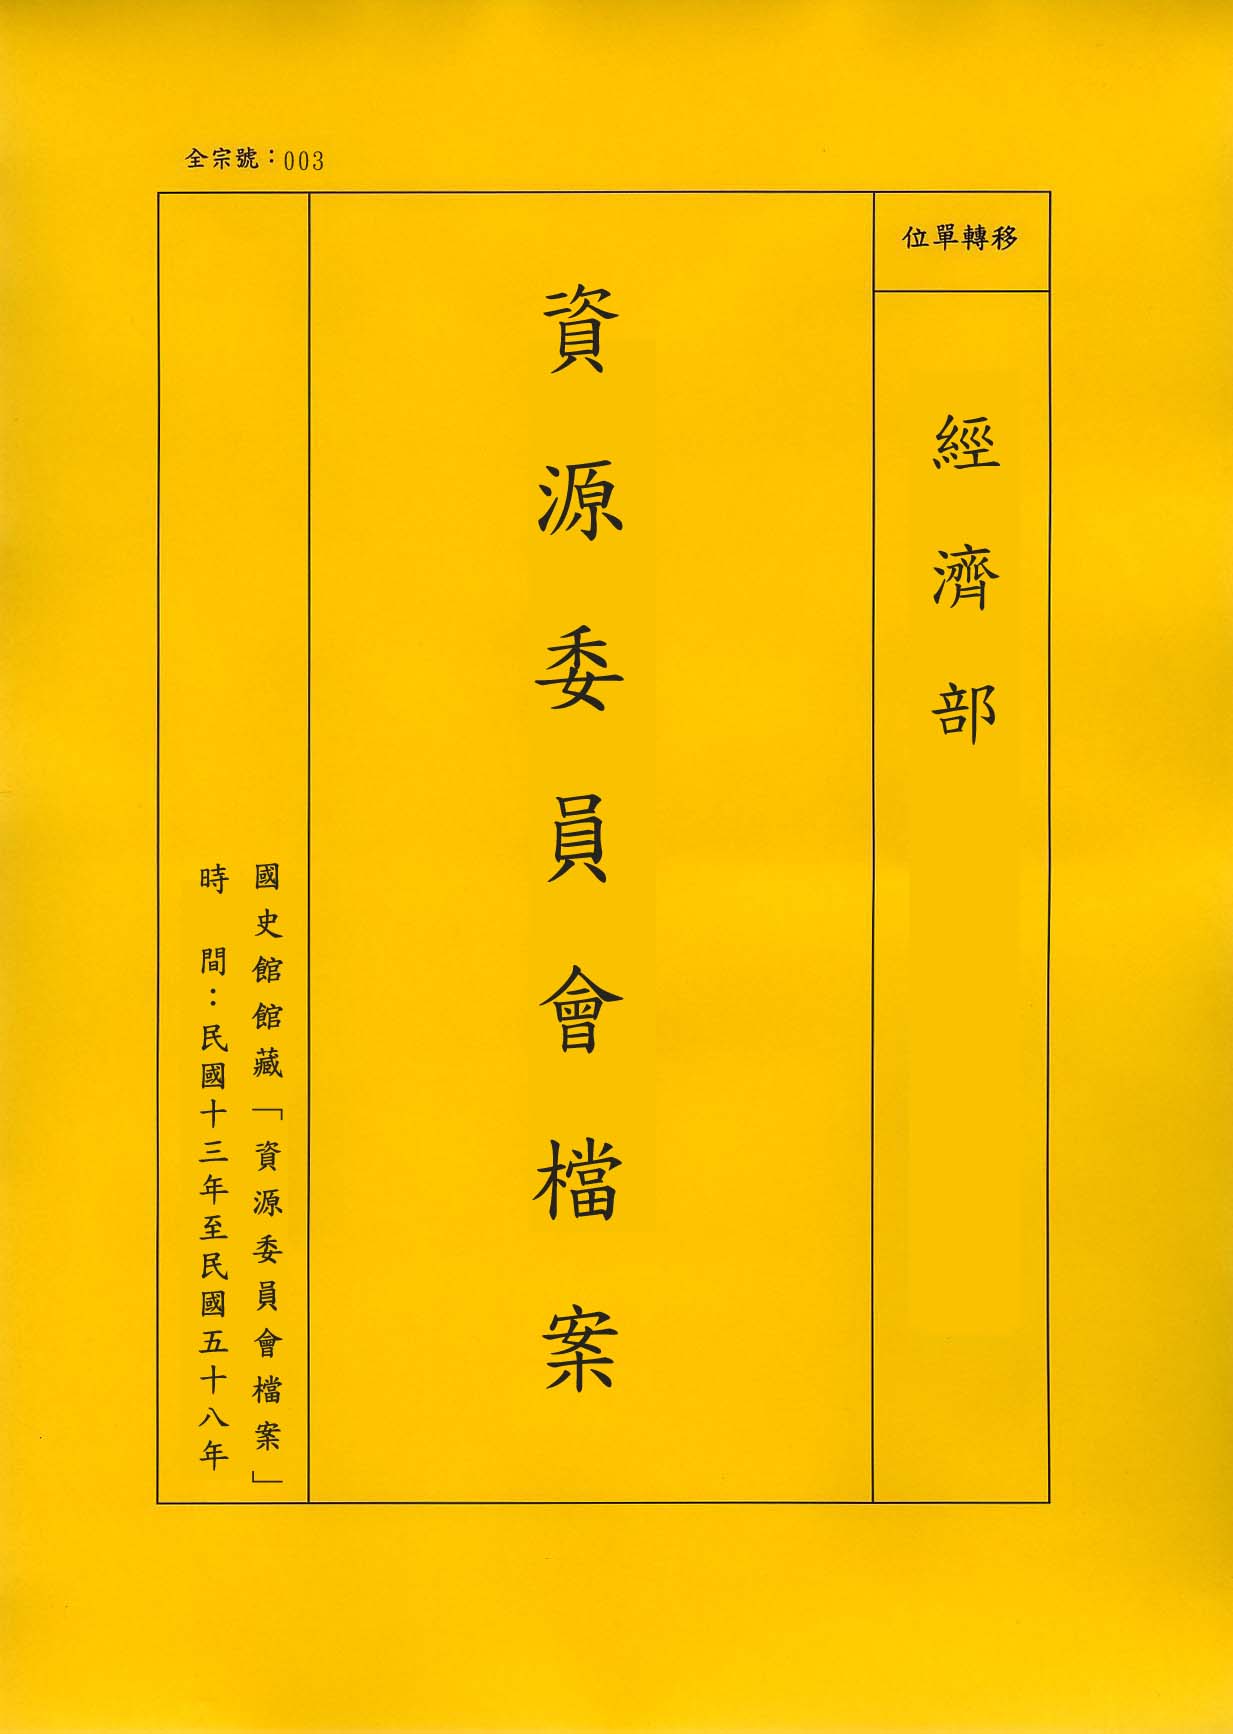 卷名:西京電廠暨寶雞分廠三十四年度會計月報等案(003-010403-0125)